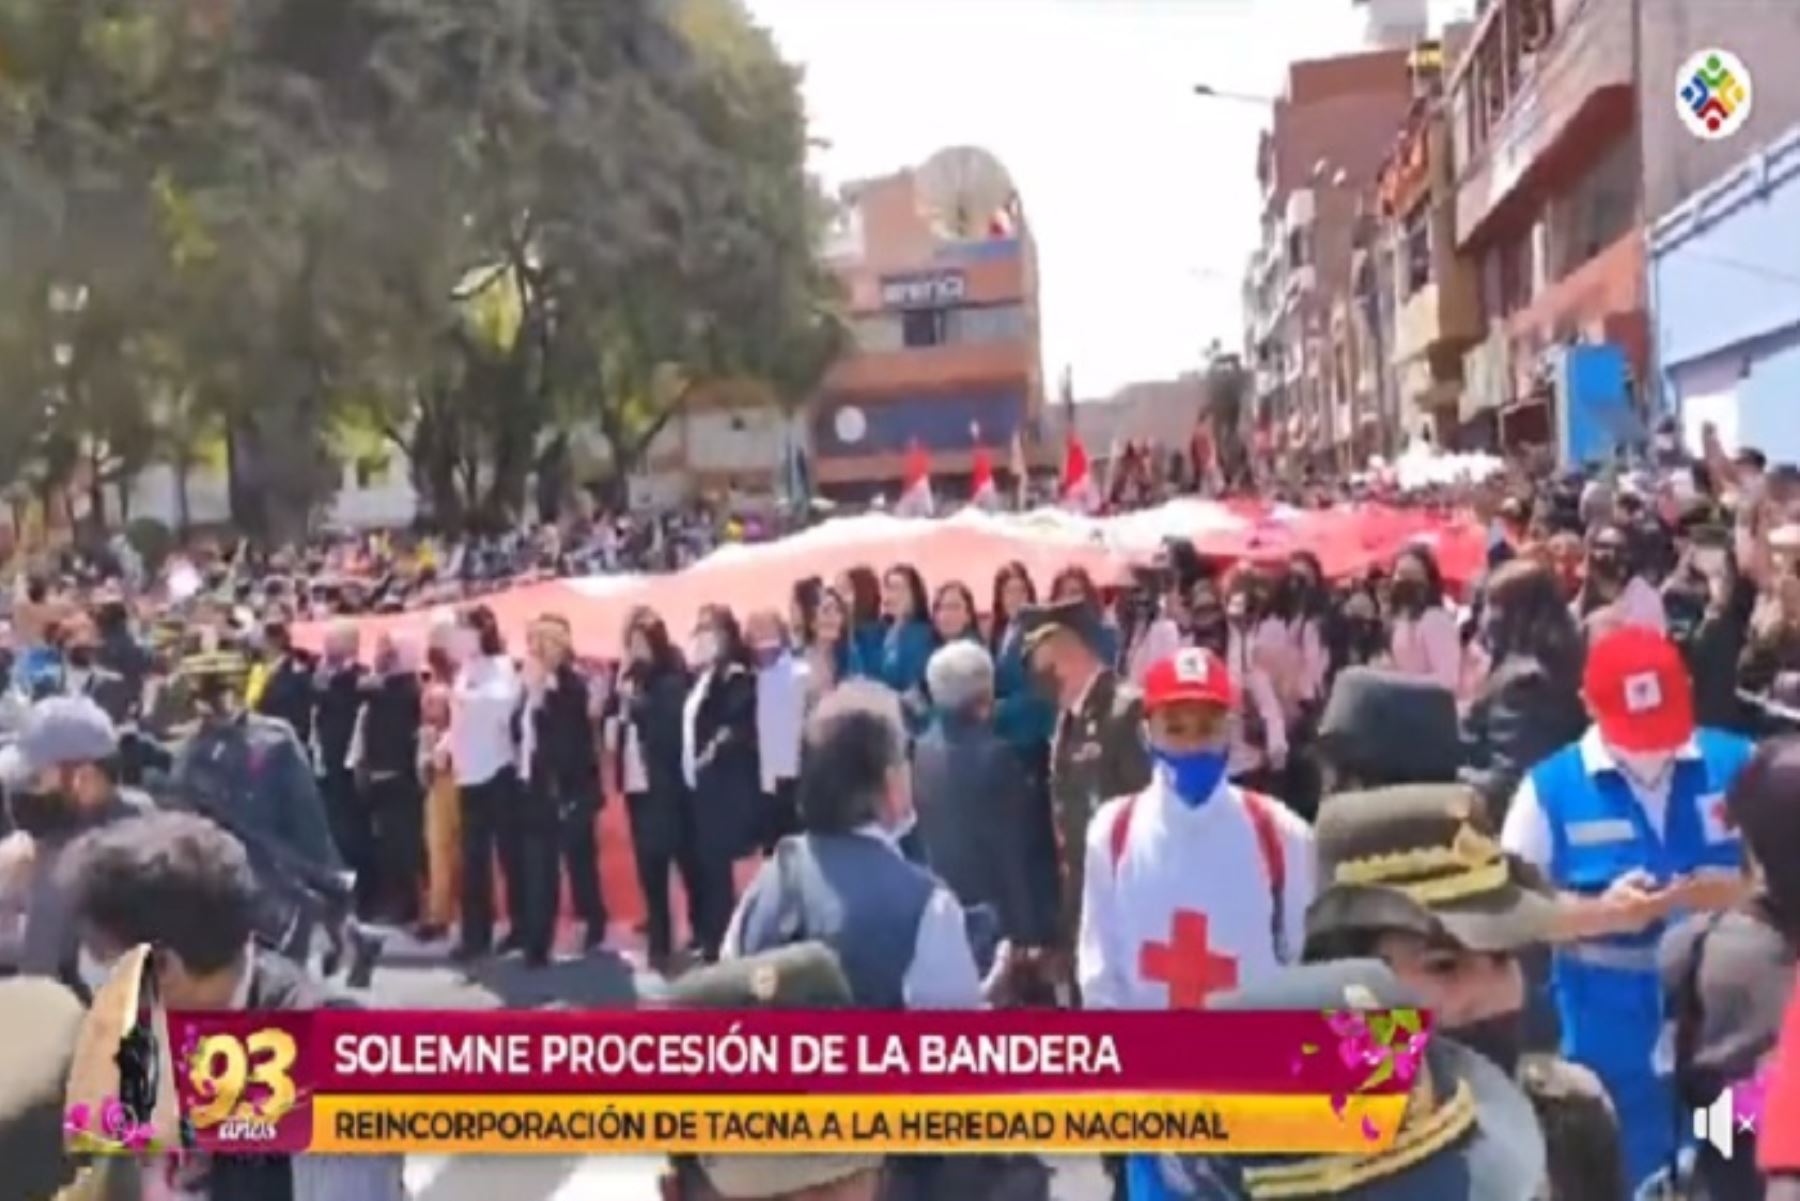 El 93 aniversario de la reincorporación de Tacna al territorio nacional está llena de espíritu patriótico e identidad nacional.